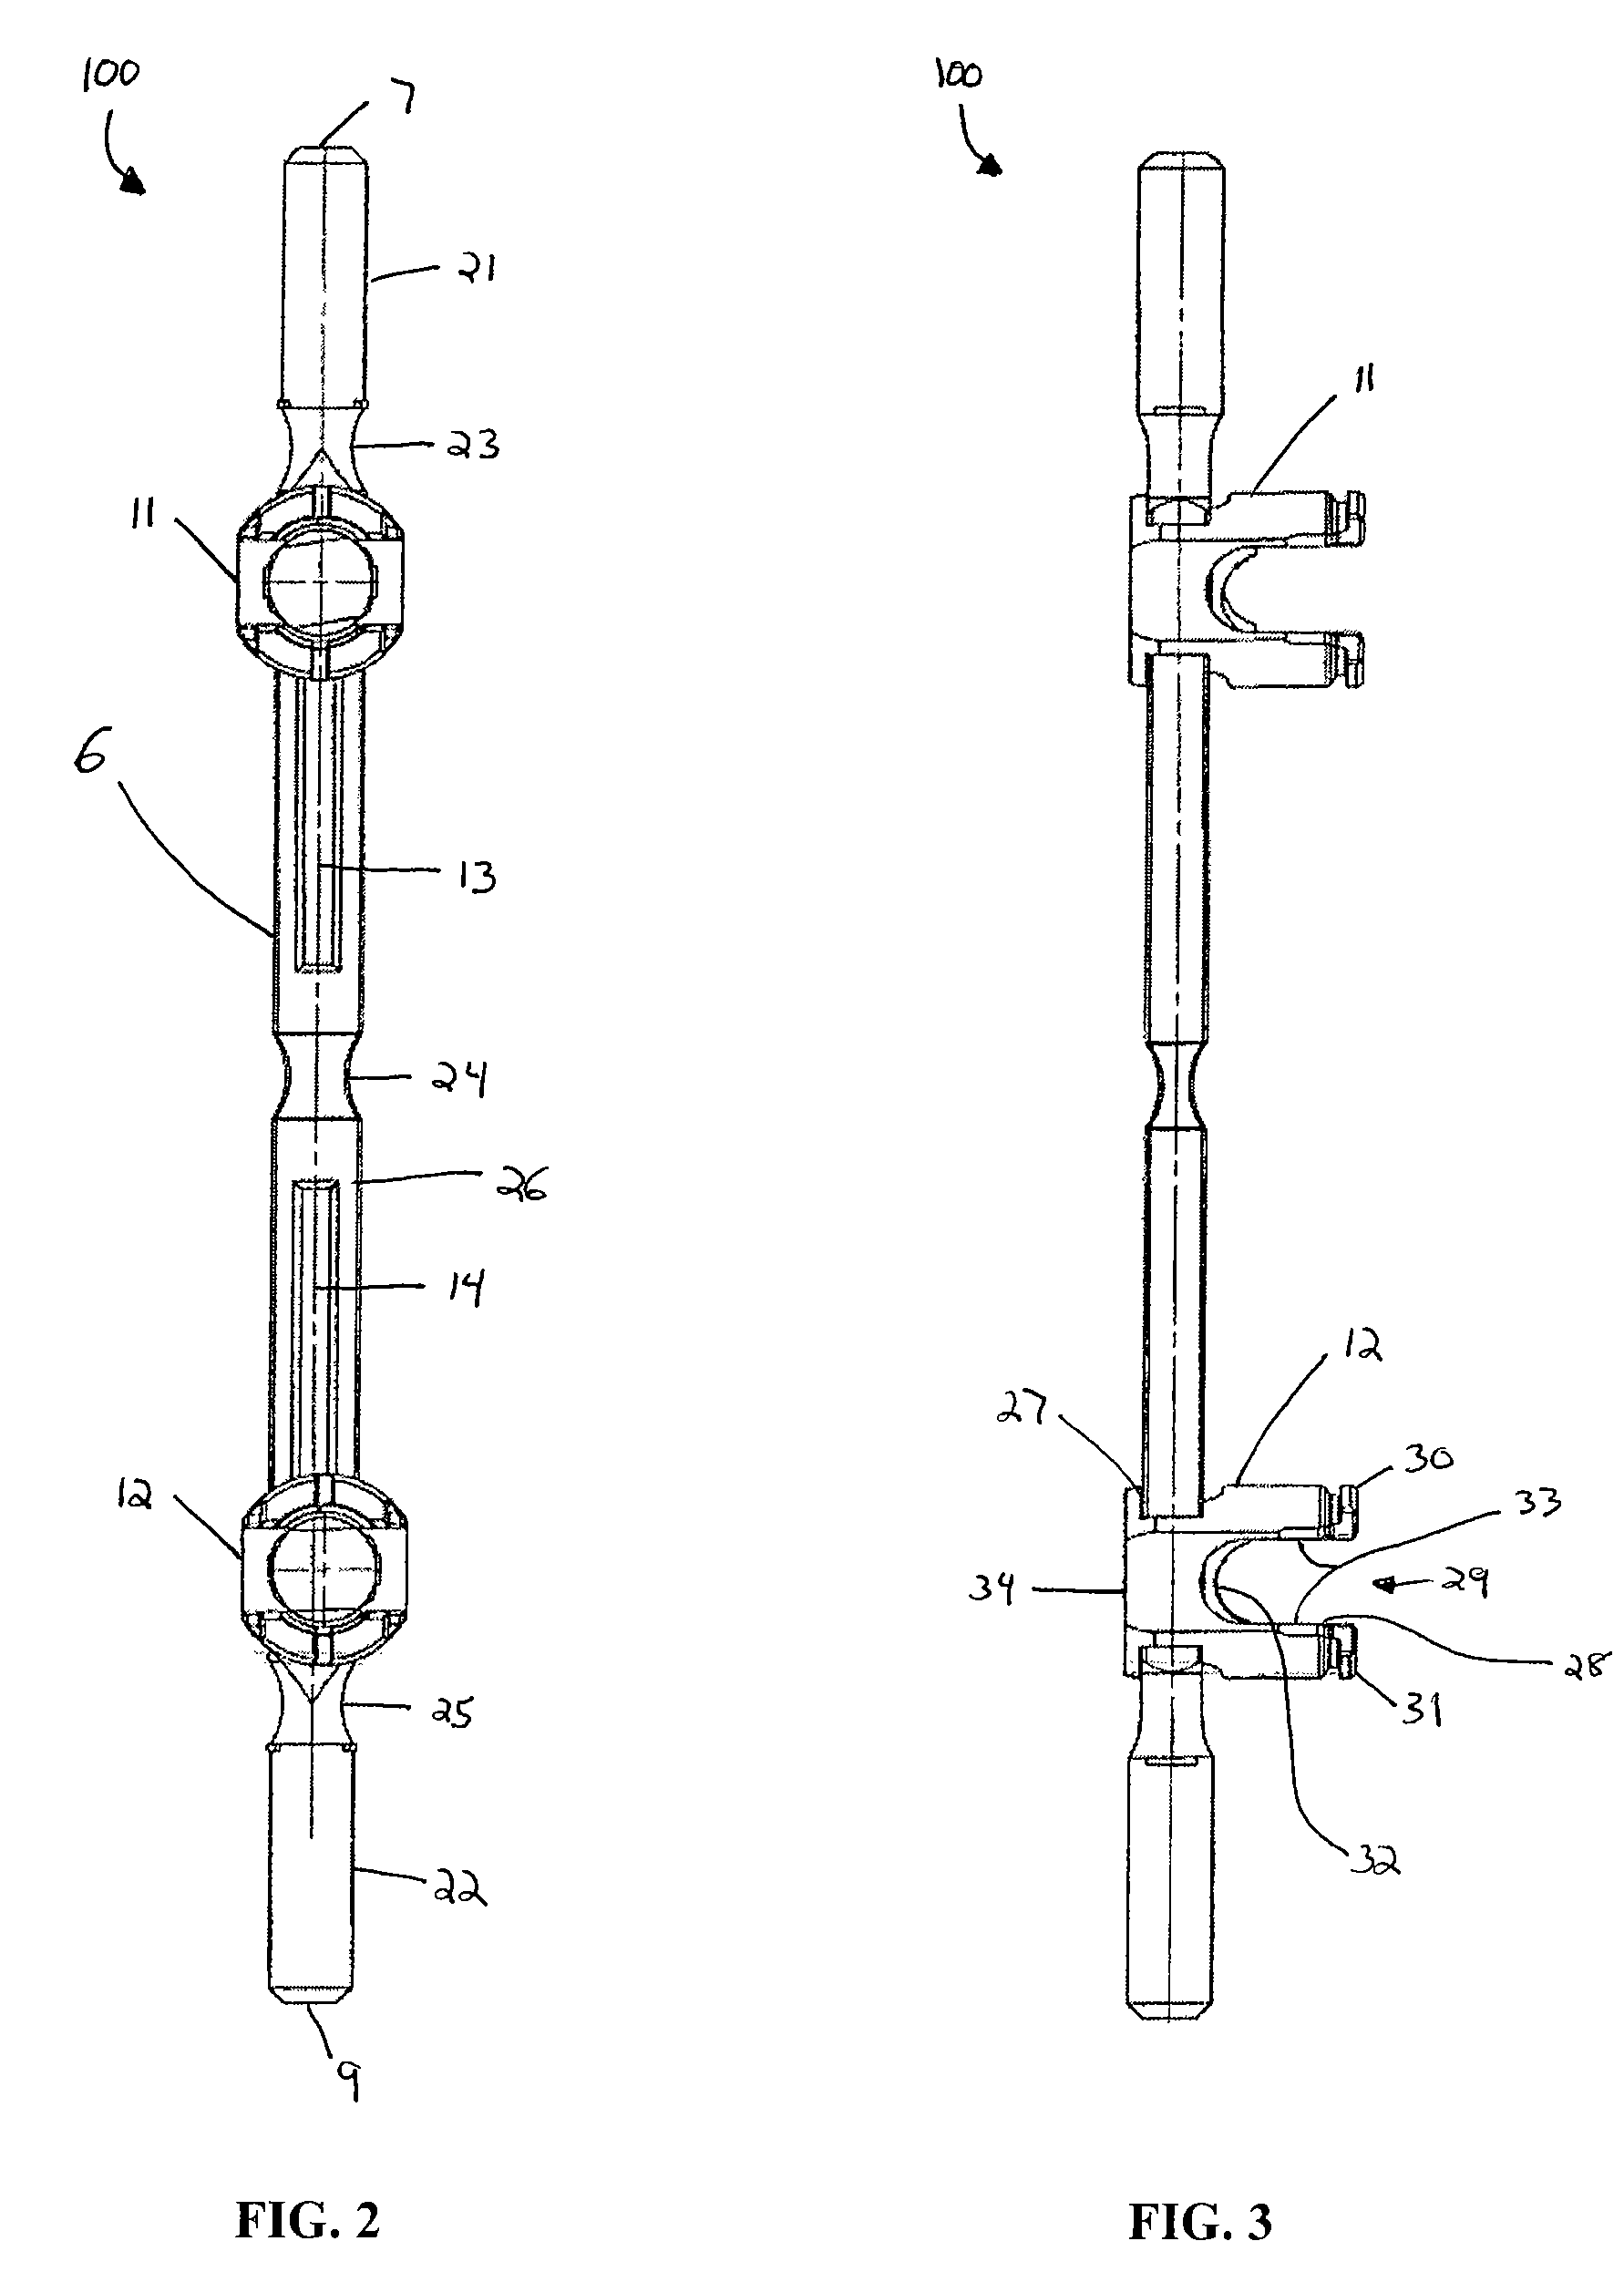 Sacral or iliac cross connector